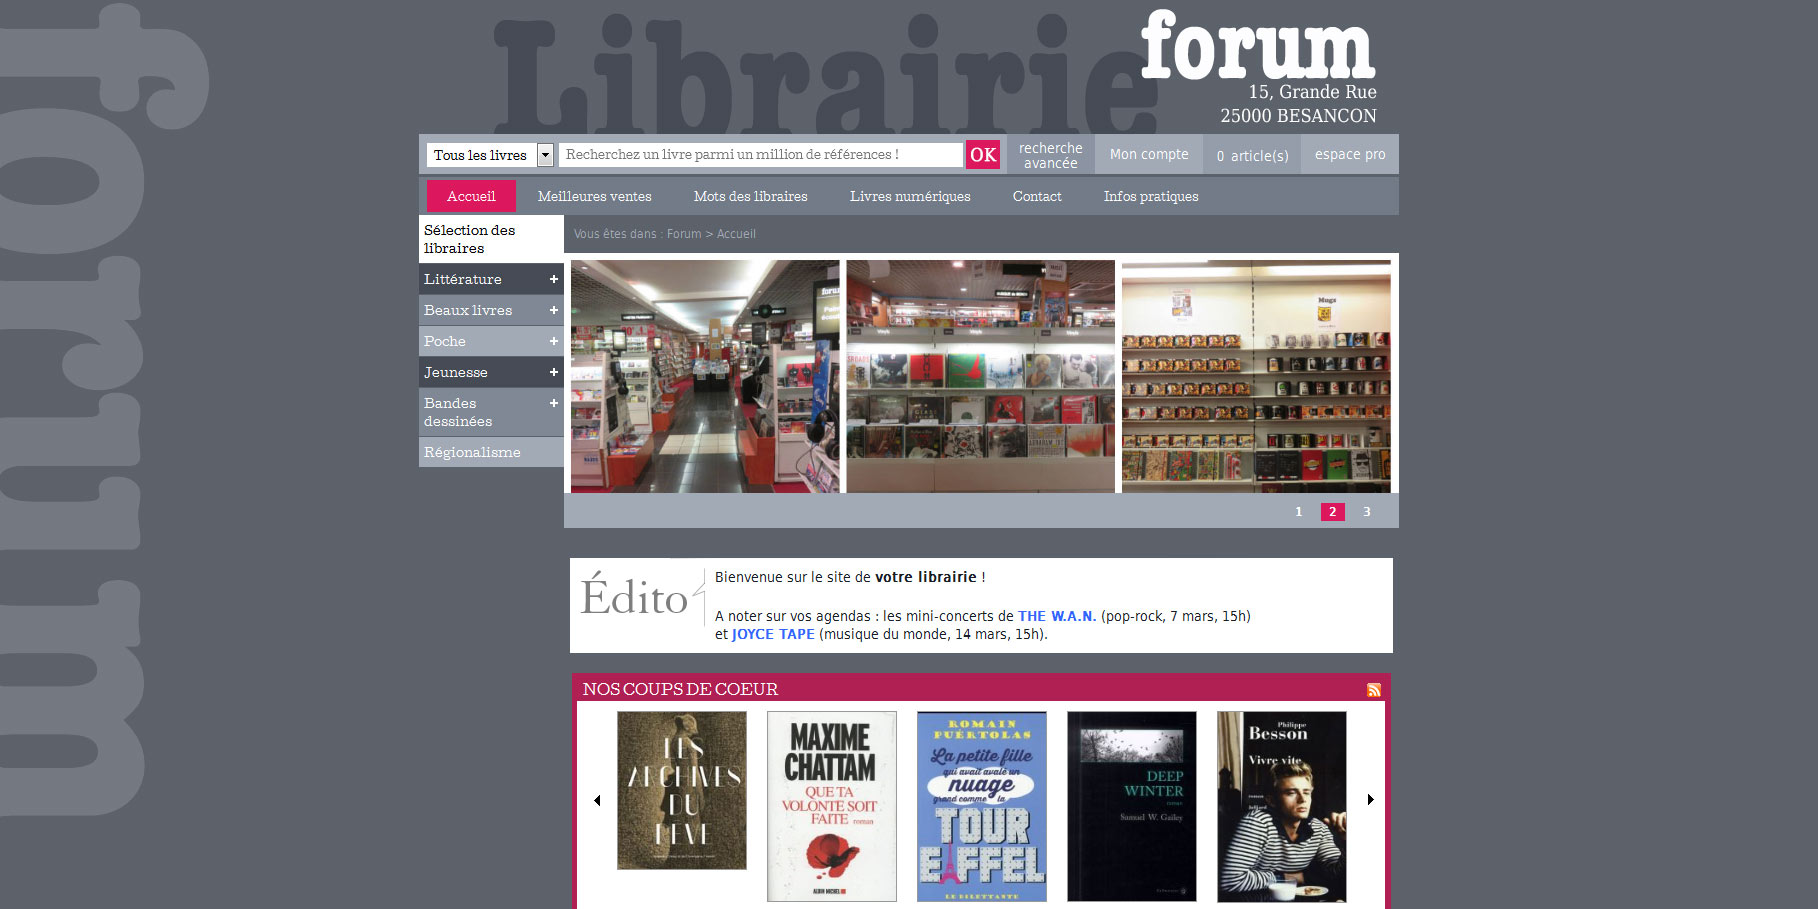 Librairie Forum Besançon